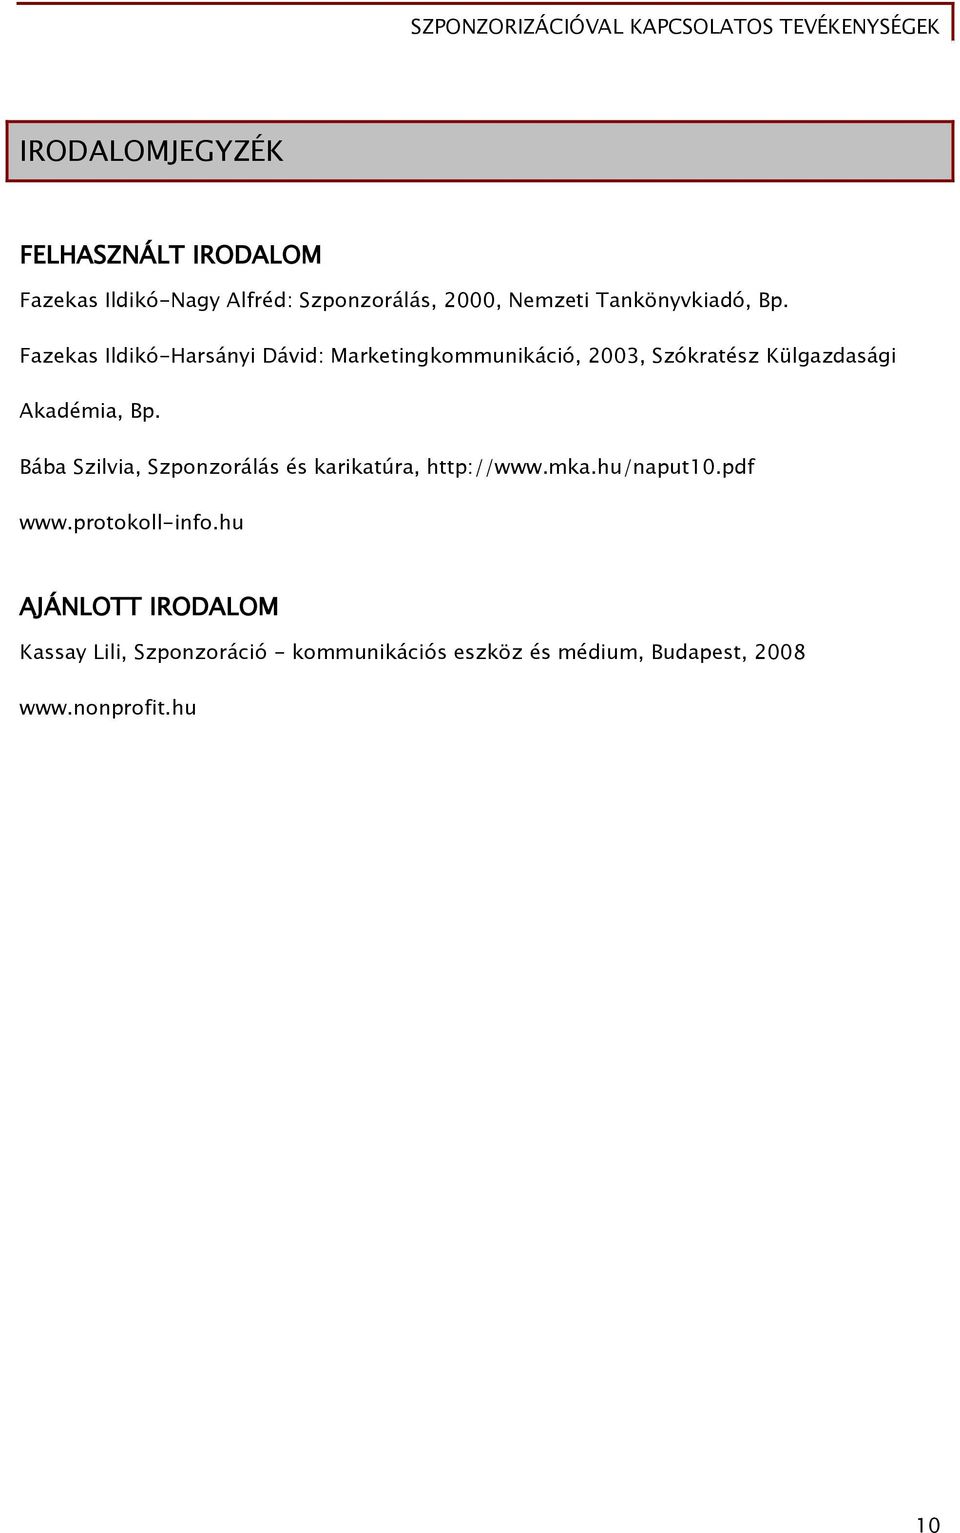 Fazekas Ildikó-Harsányi Dávid: Marketingkommunikáció, 2003, Szókratész Külgazdasági Akadémia, Bp.